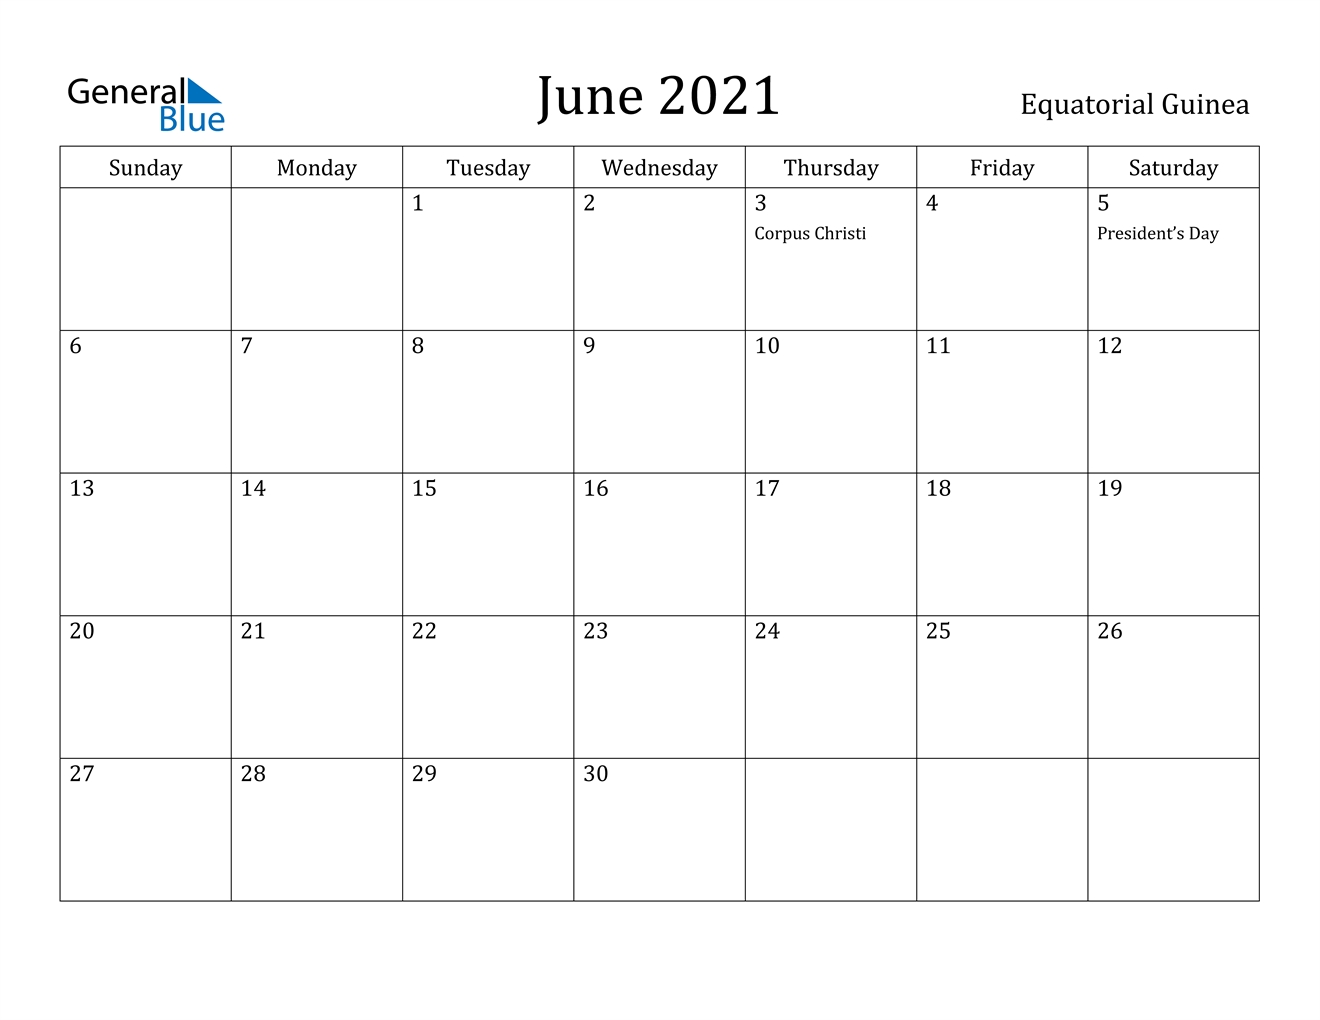 June 2021 Calendar - Equatorial Guinea June 2021 Calendar With Holidays